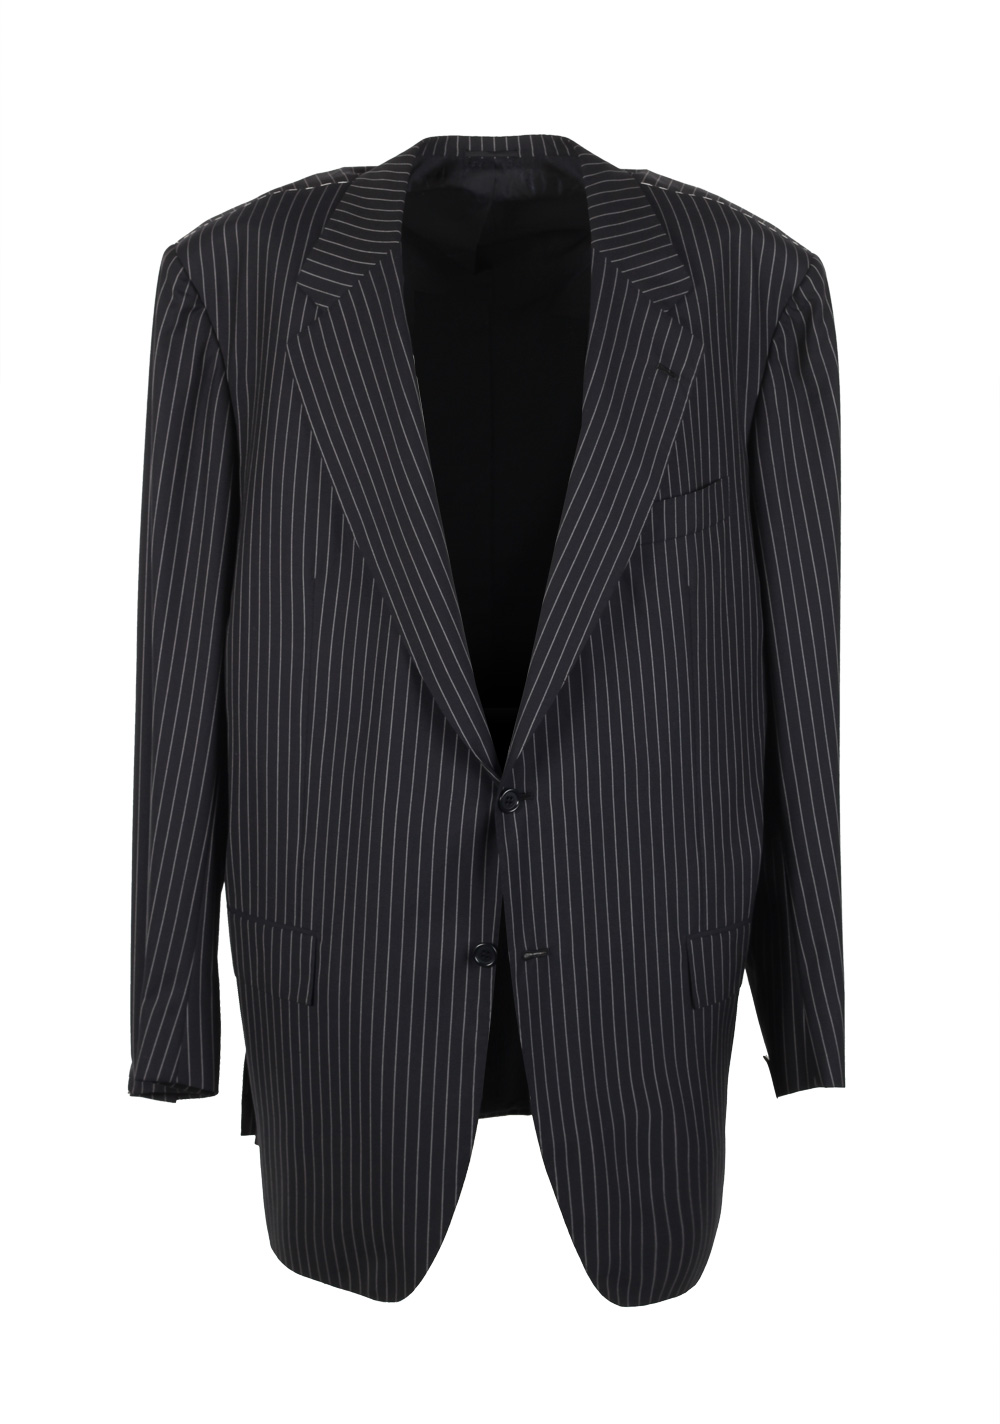 Kiton Suit Size 60 / 50R U.S. Blanc Blu Super 180S | Costume Limité